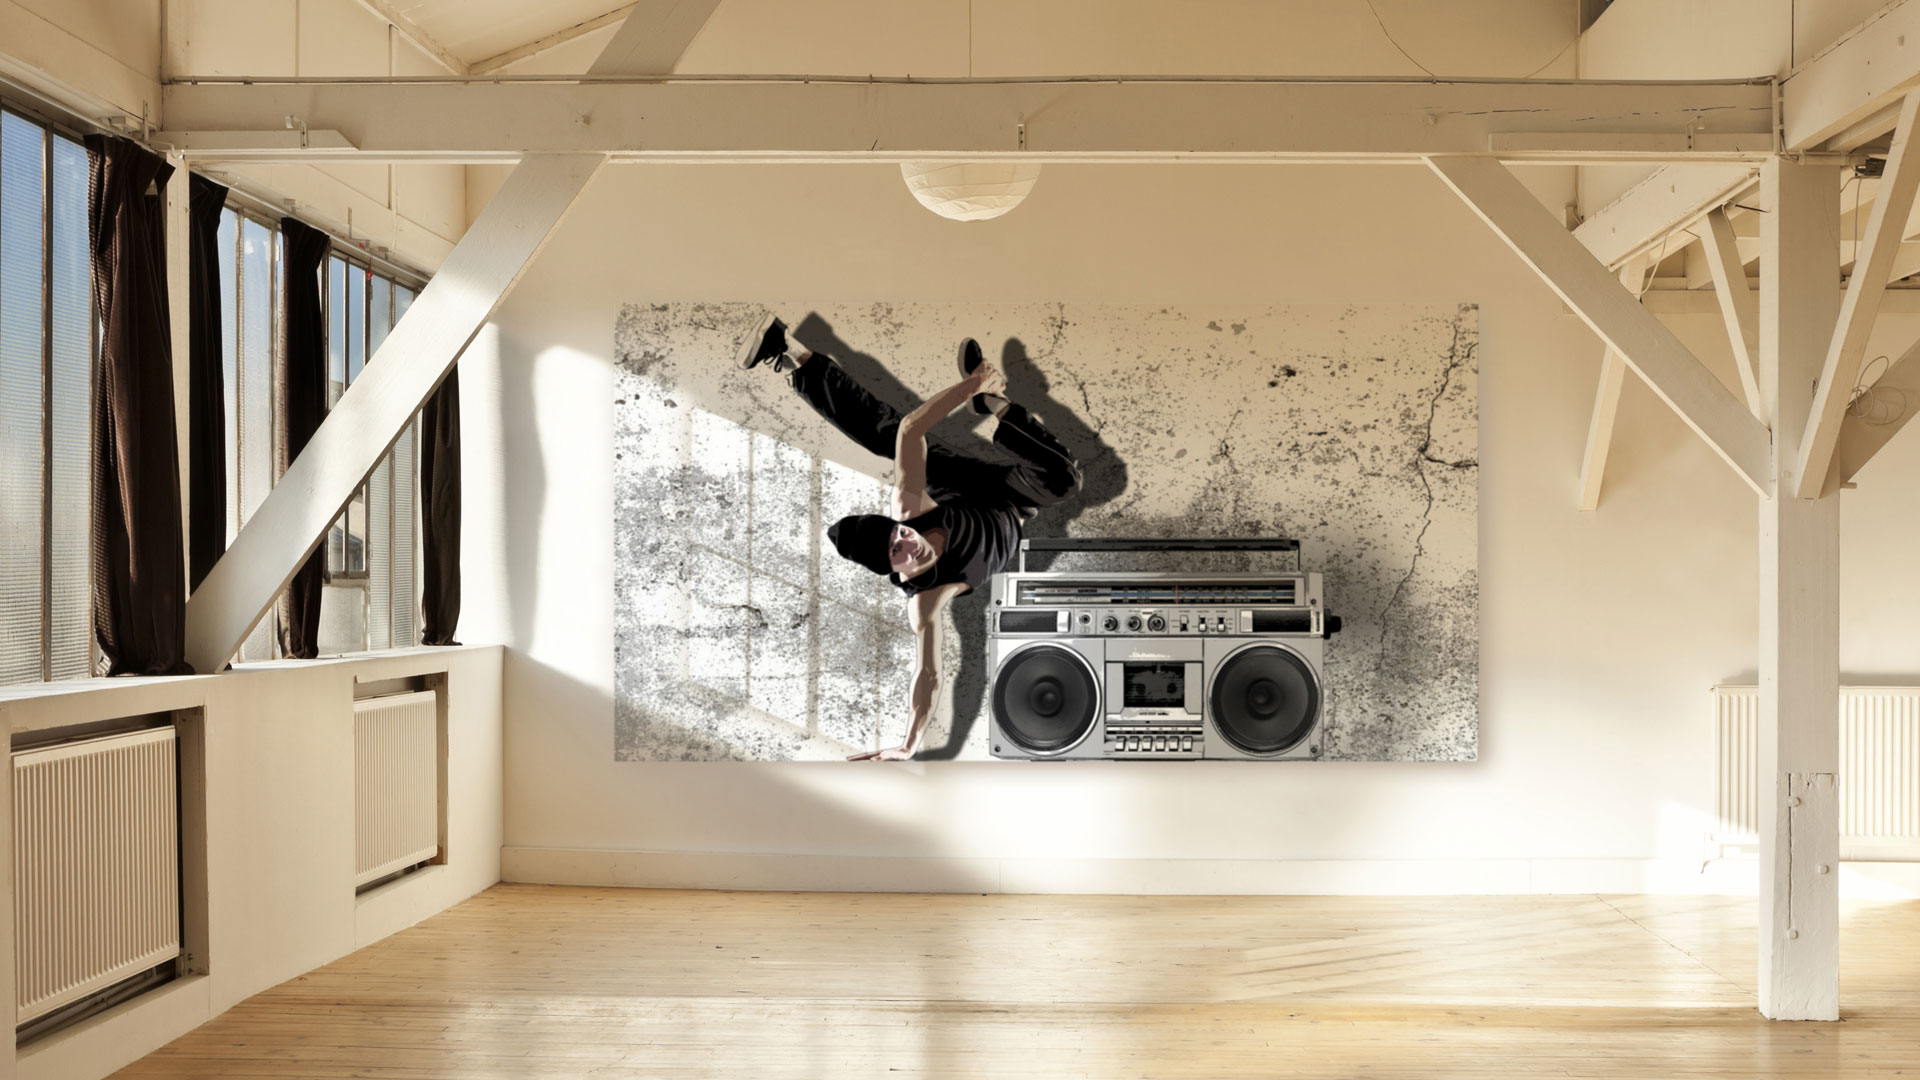 Sound art concept: Breakdancer.